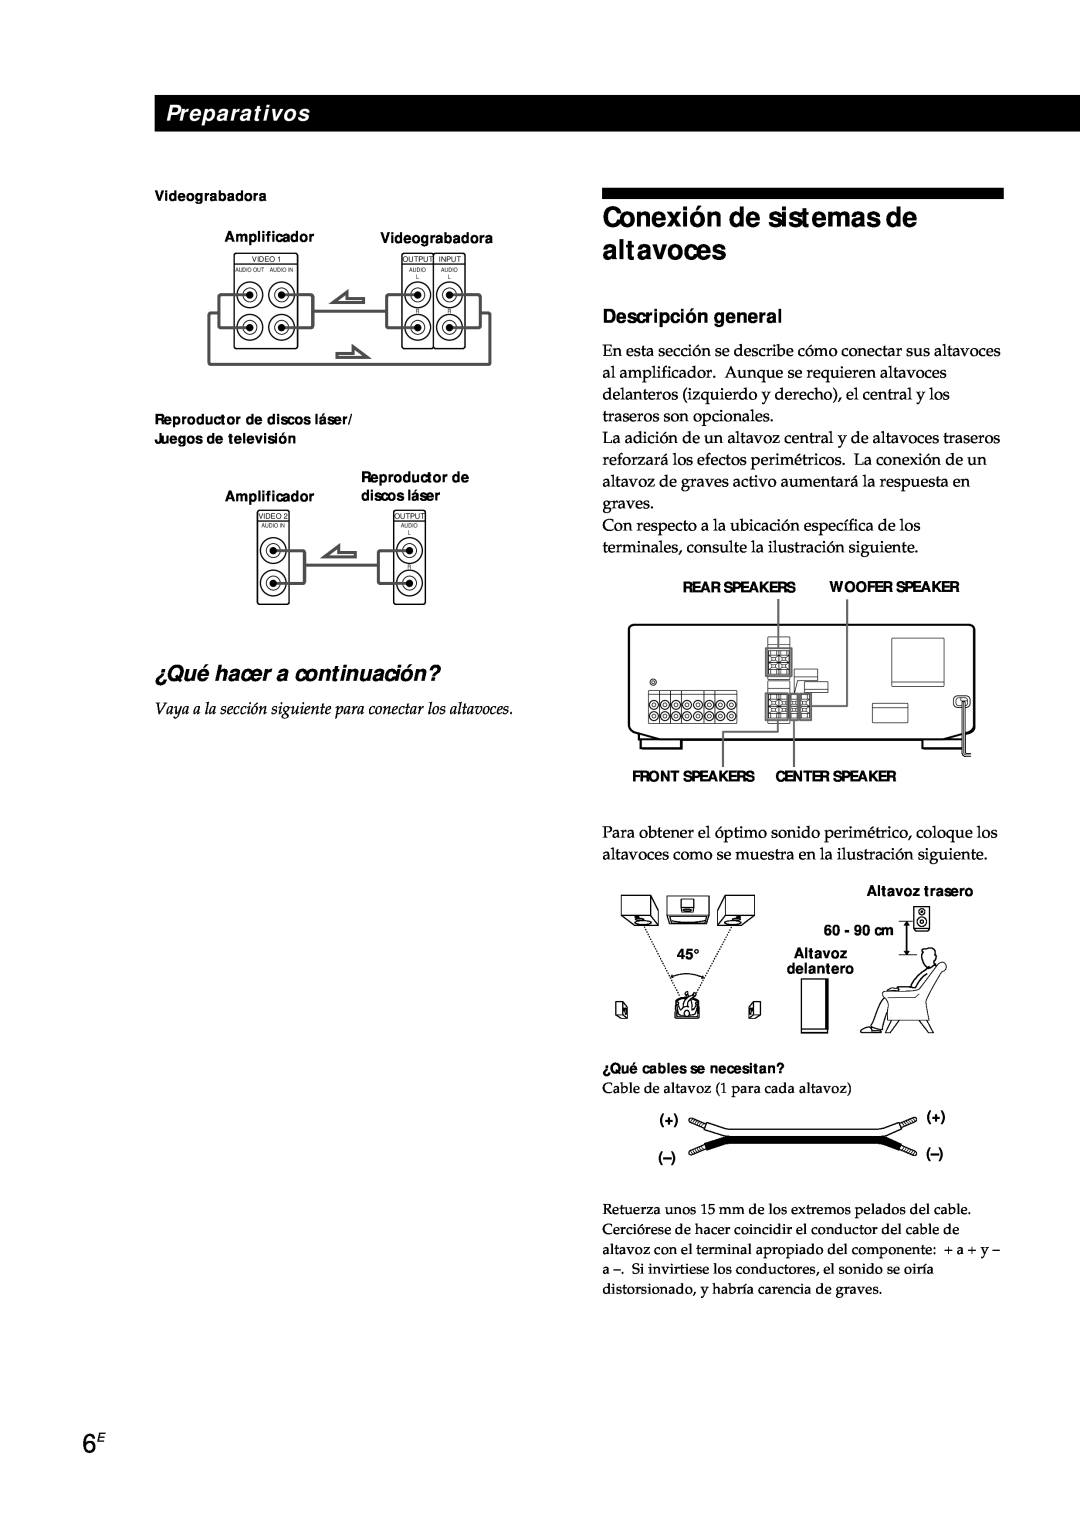 Sony TA-AV561A manual Conexión de sistemas de altavoces, ¿Qué hacer a continuación?, Videograbadora, Preparativos 